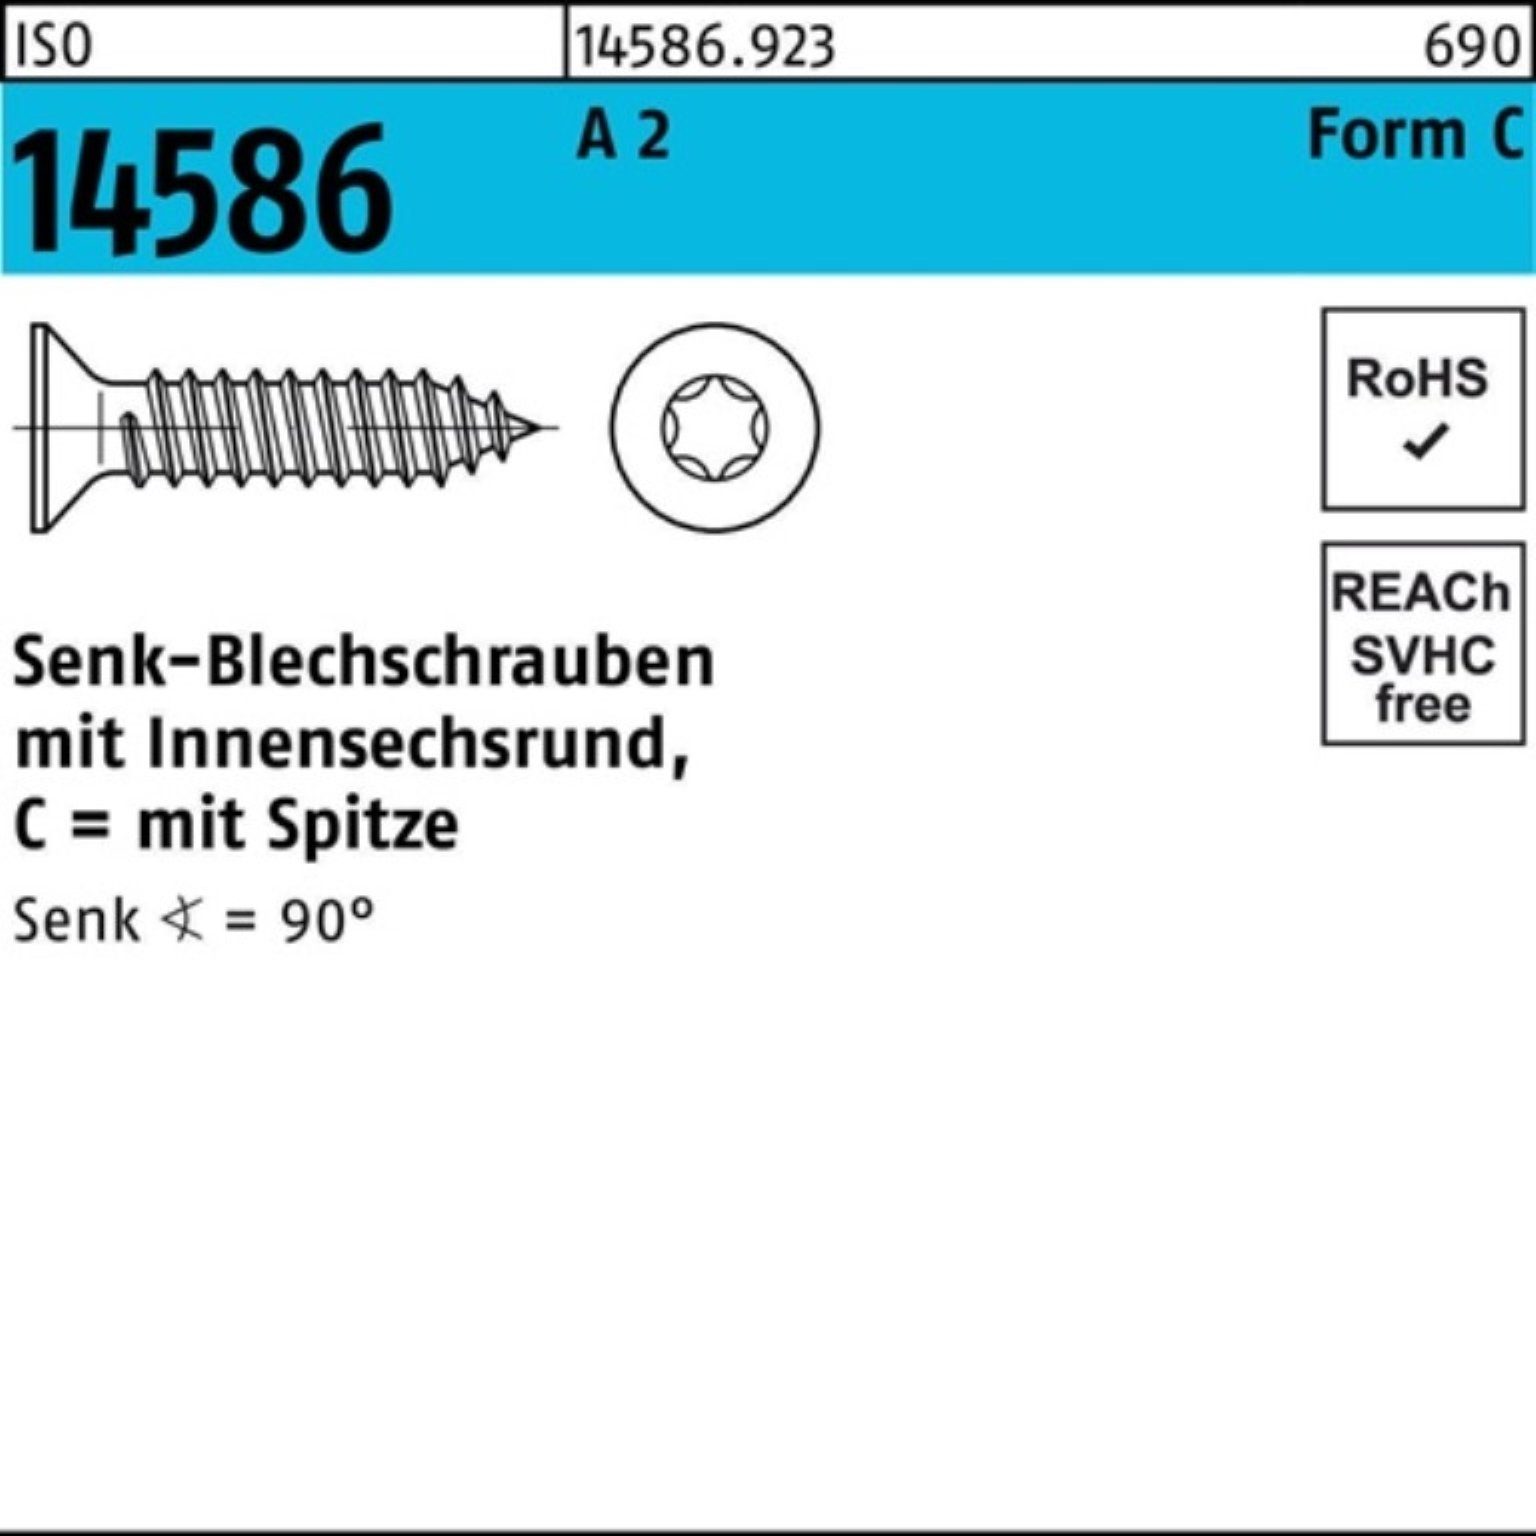 Reyher Schraube 250er Pack Senkblechschraube ISO 14586 ISR/Spitze 4,8x 38 -C T25 A 2 2